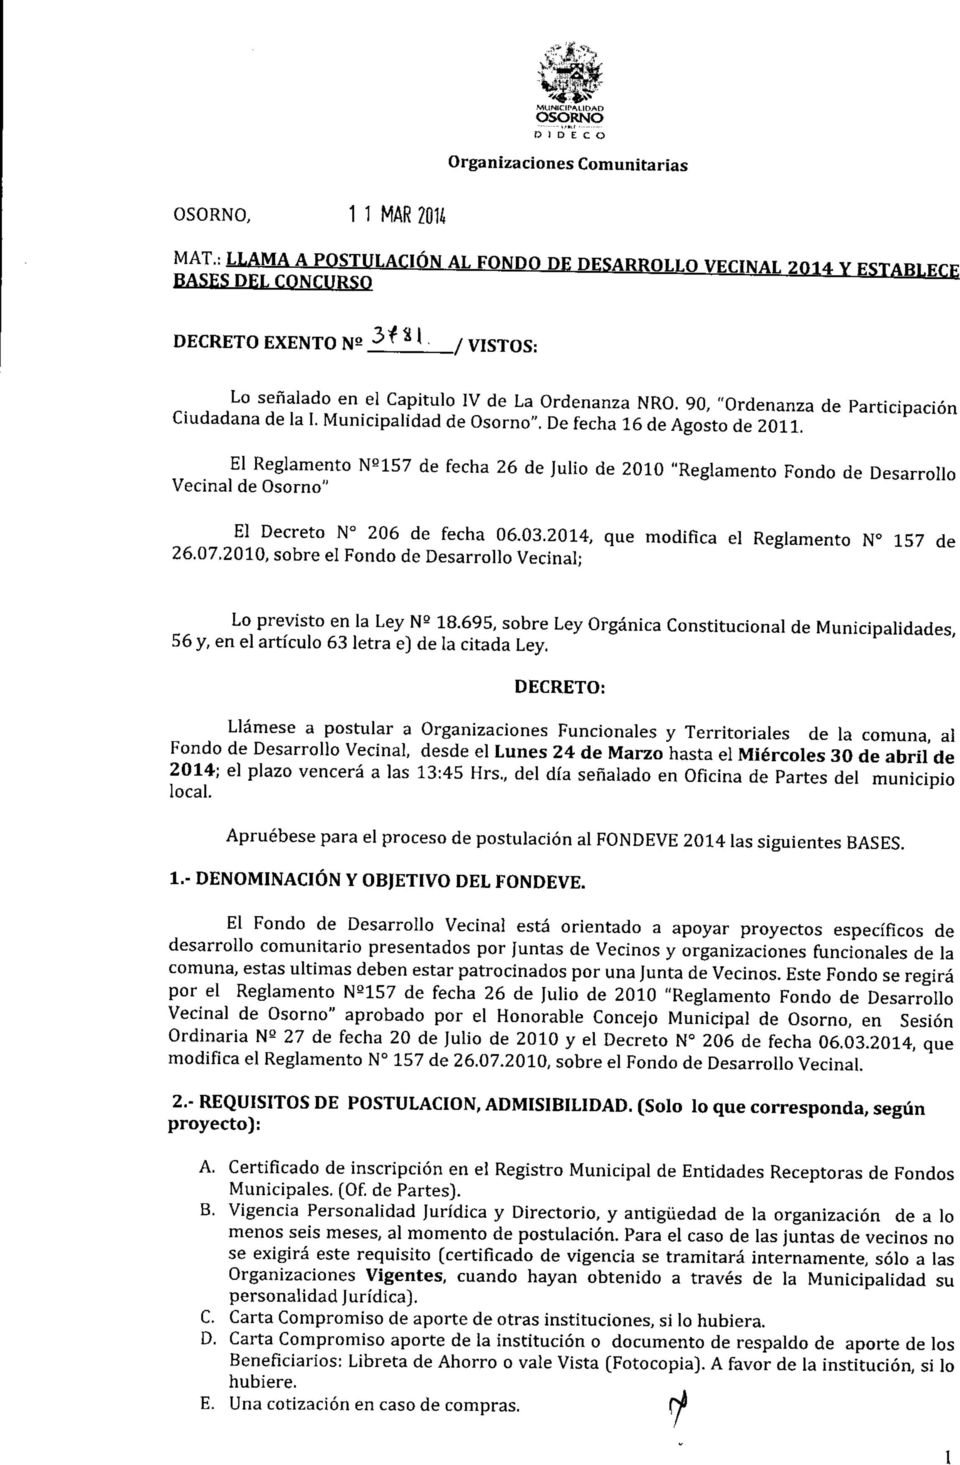 El Reglamento Ne157 de fecha 26 de Julio de 2010 "Reglamento Fondo de Desarrollo Vecinal de Osorno" El Decreto N 206 de fecha 06.03.2014, que modifica el Reglamento N 157 de 26.07.